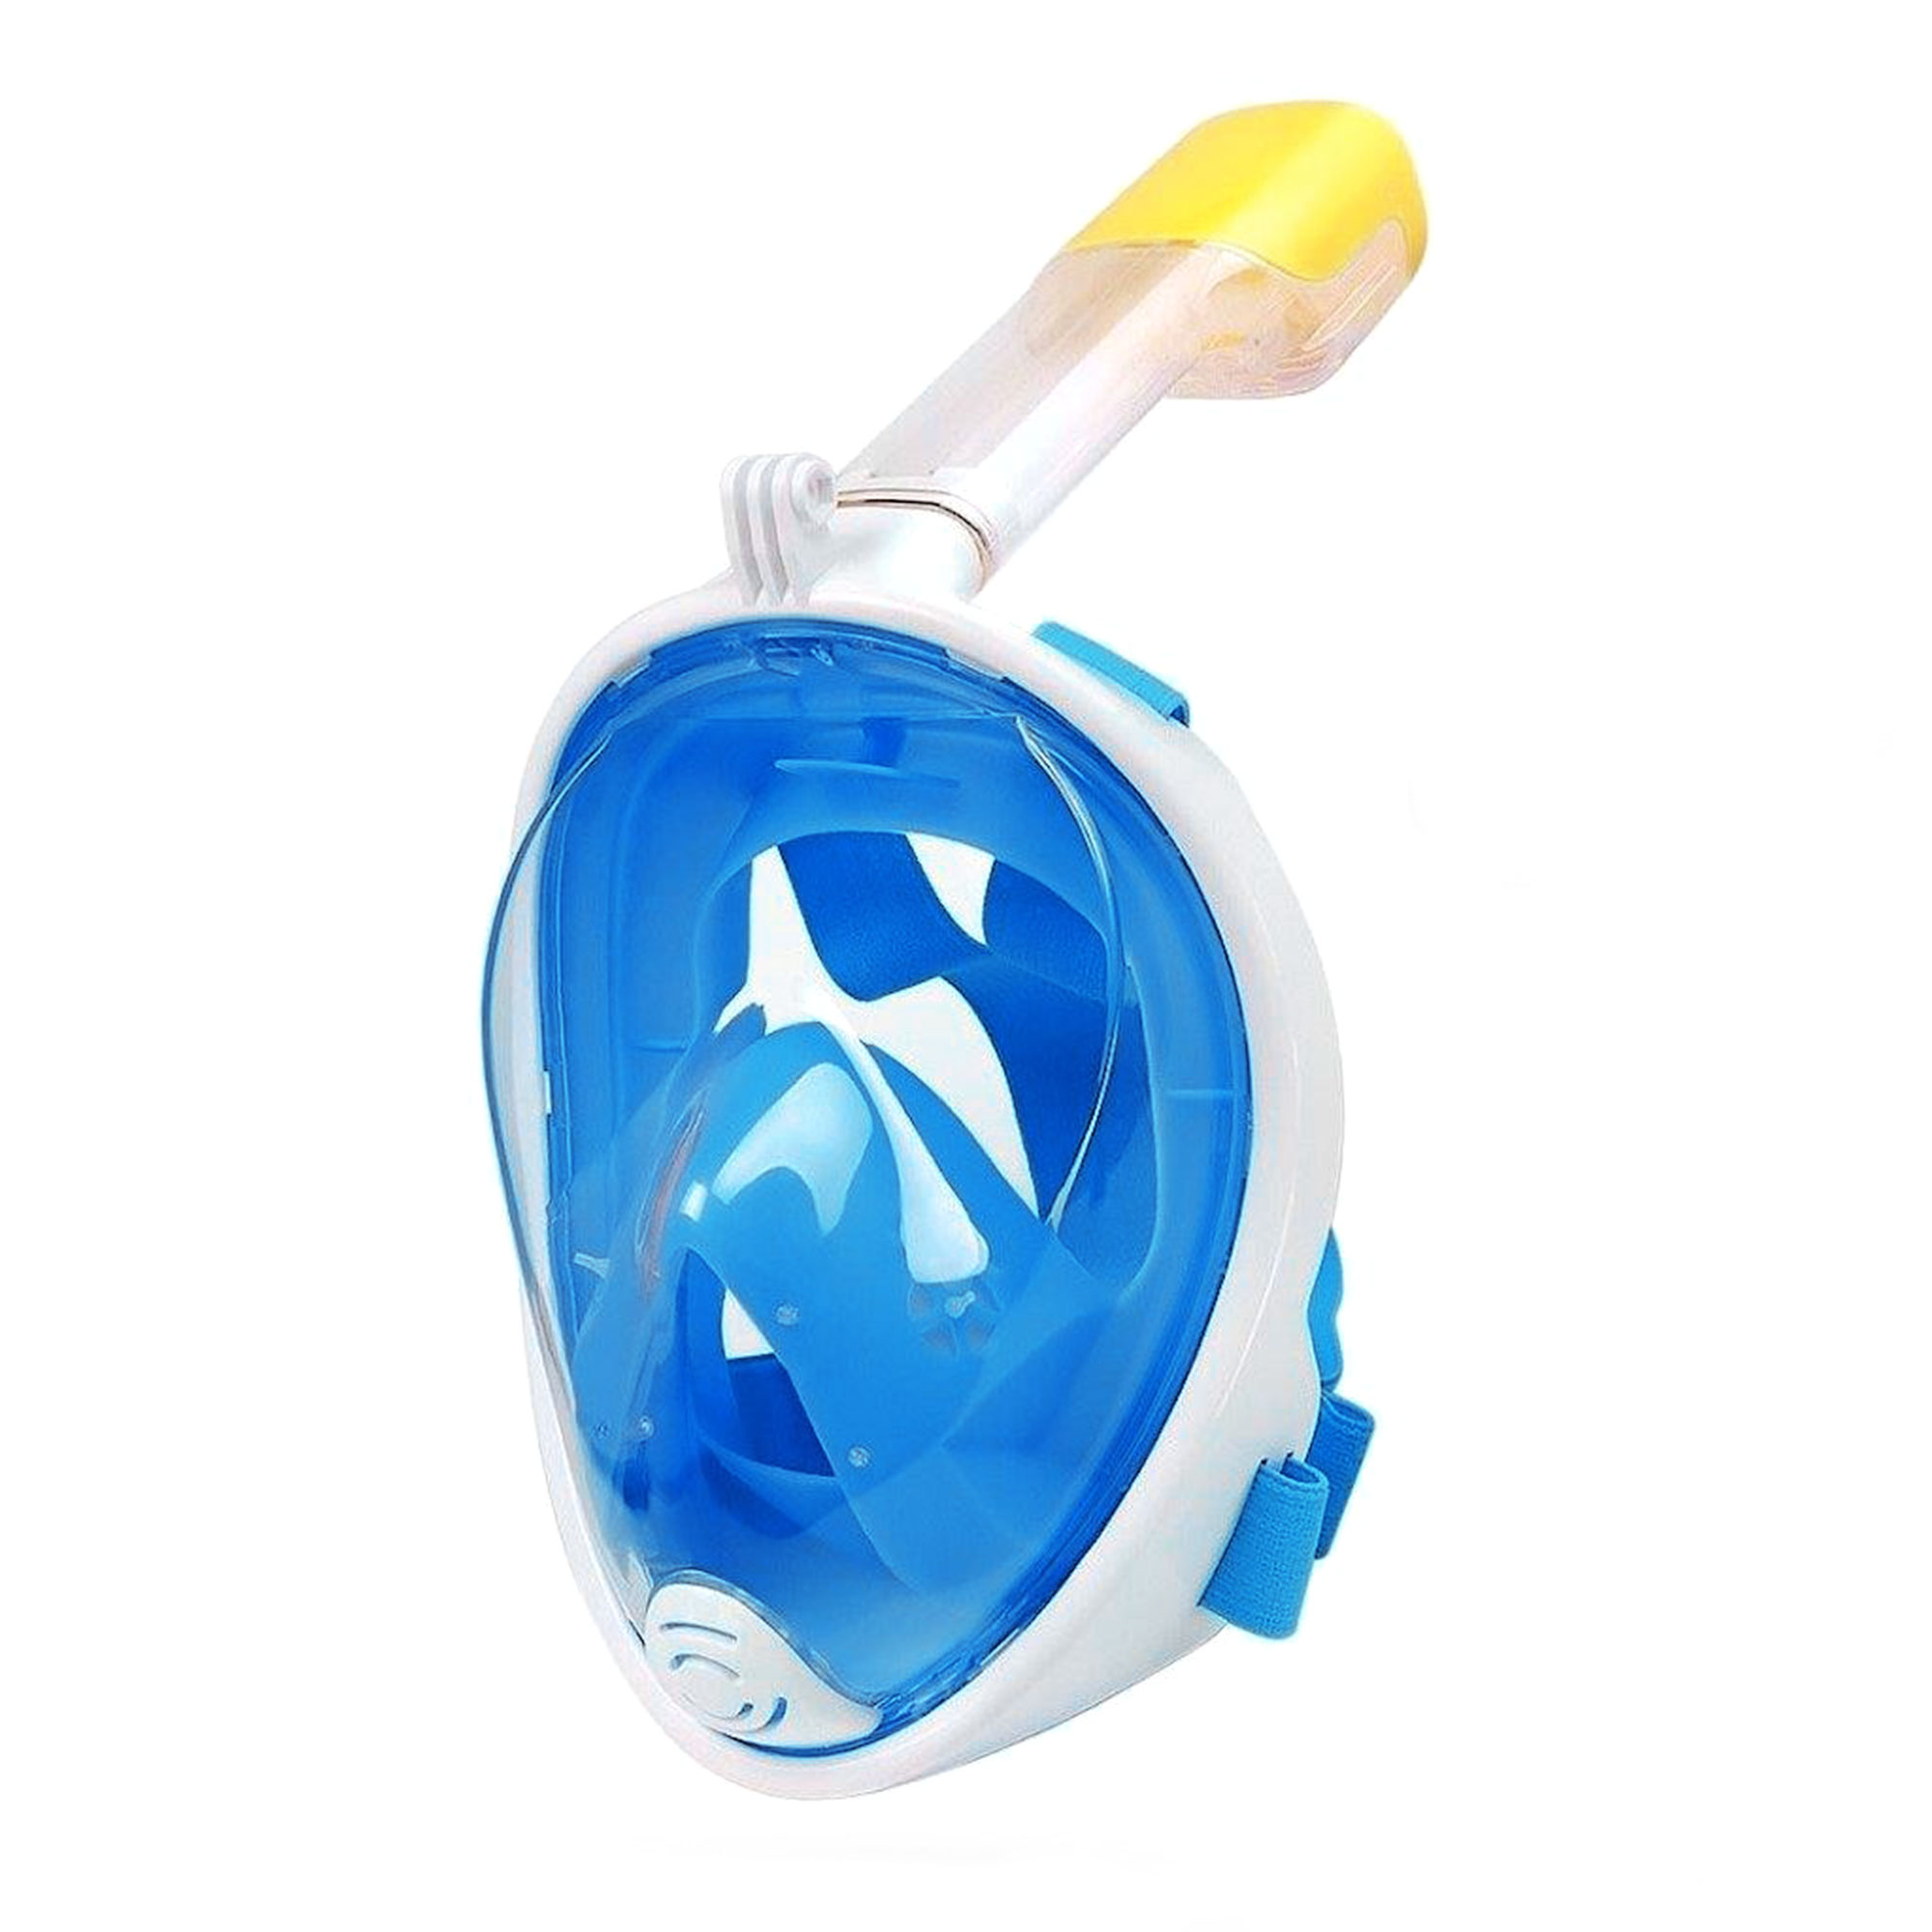 Schnorchelmaske für Kinder - blau 4053 - 1